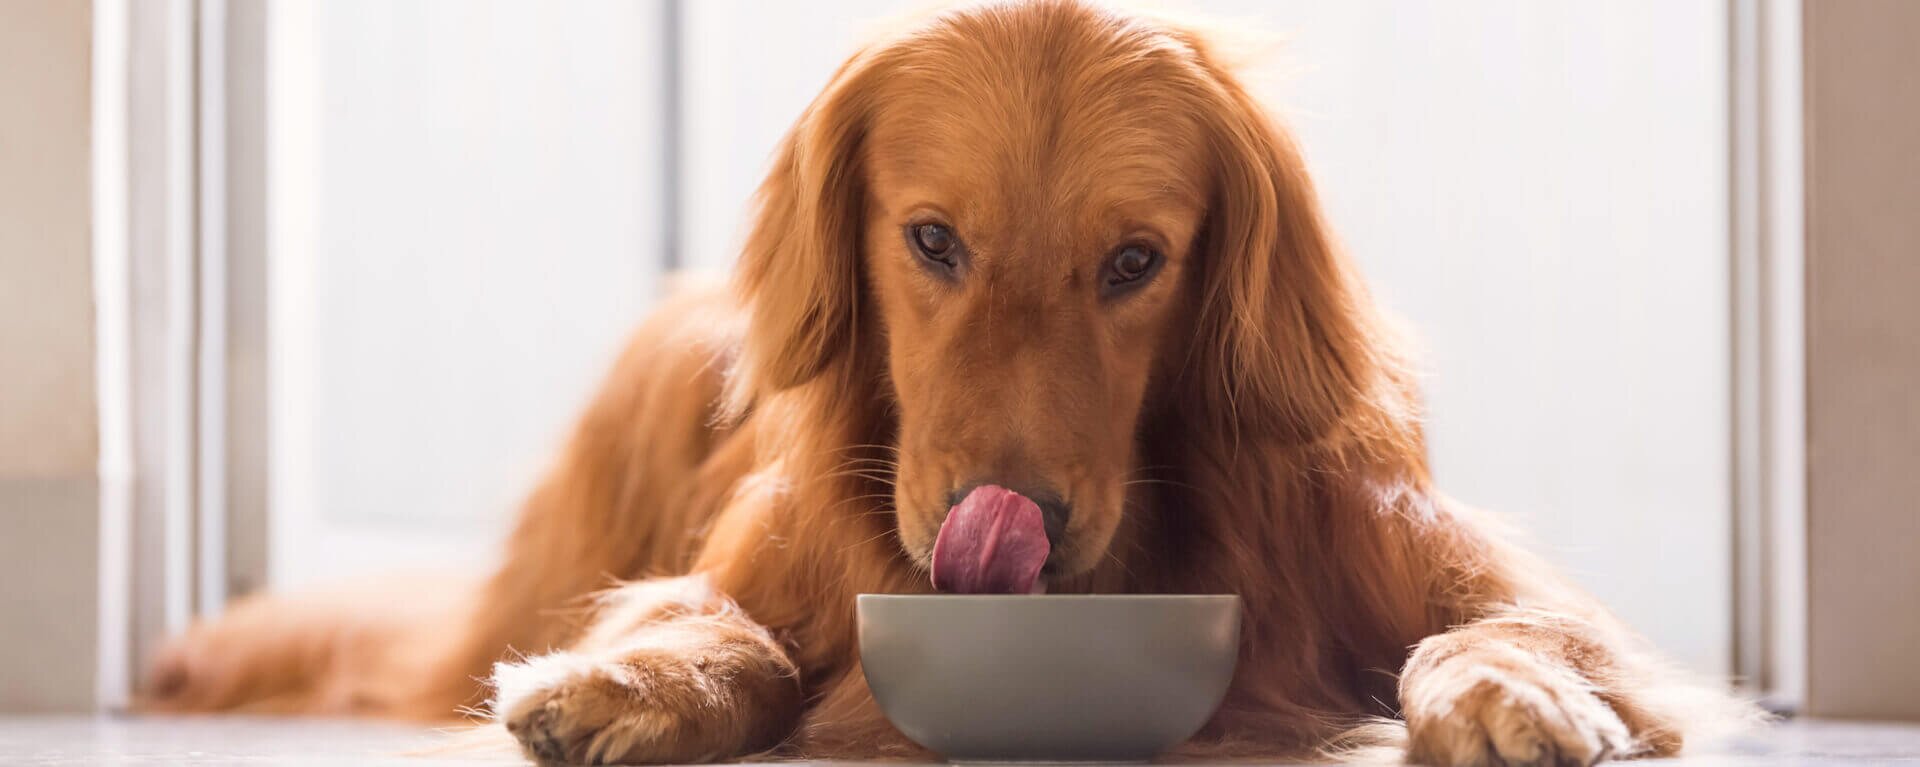 Правильное питание собак